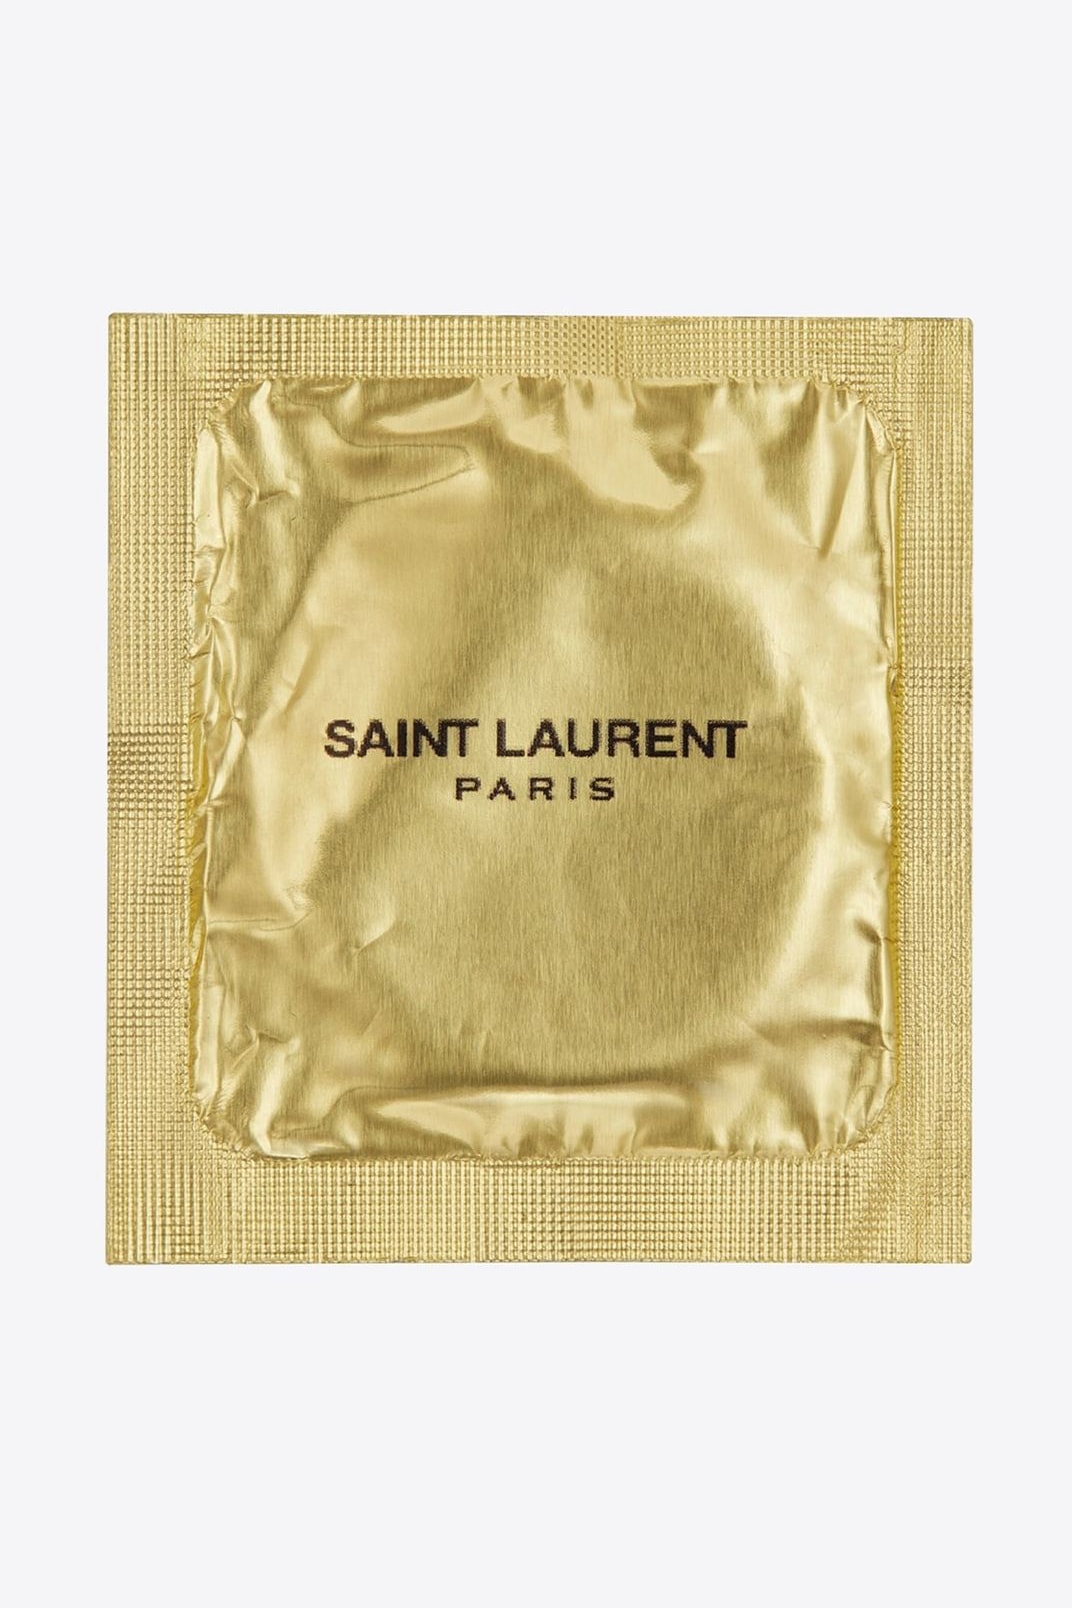 Saint Laurent 推出要價 €2 歐元之別注避孕套系列